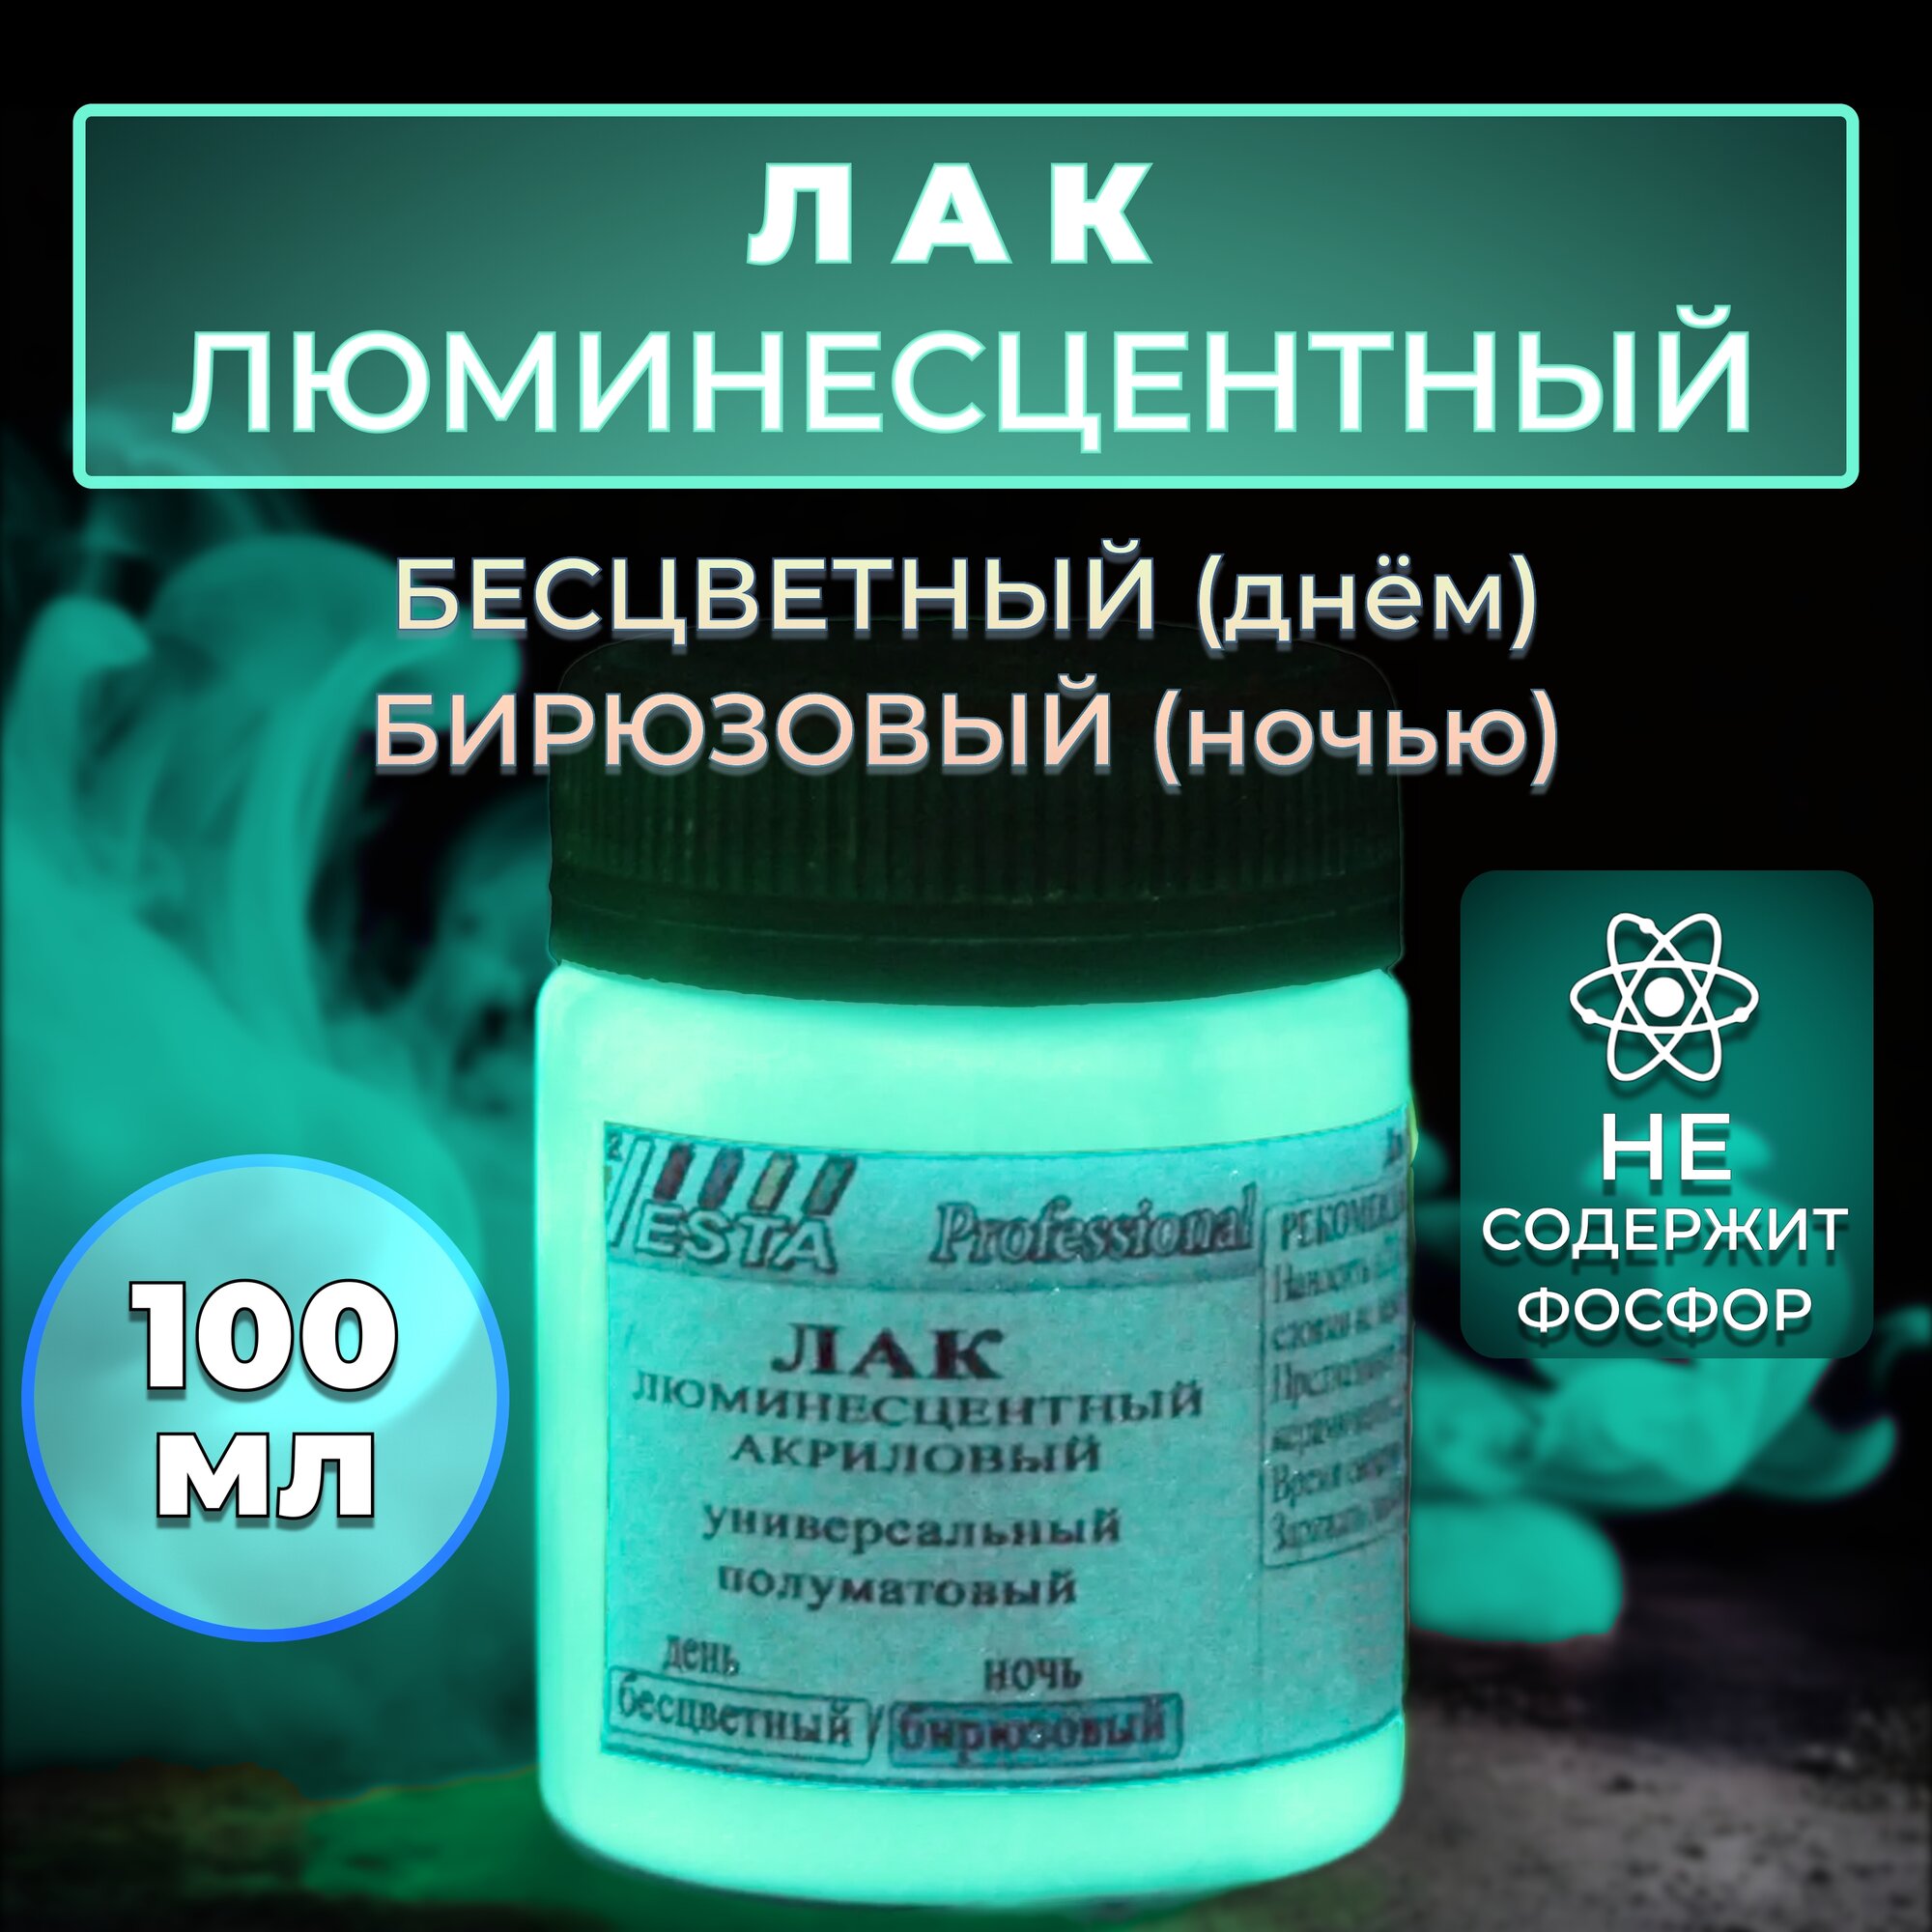 Лак люминесцентный "VESTA PROFESSIONAL" бесцветный / бирюзовый (день / ночь) - 100 мл